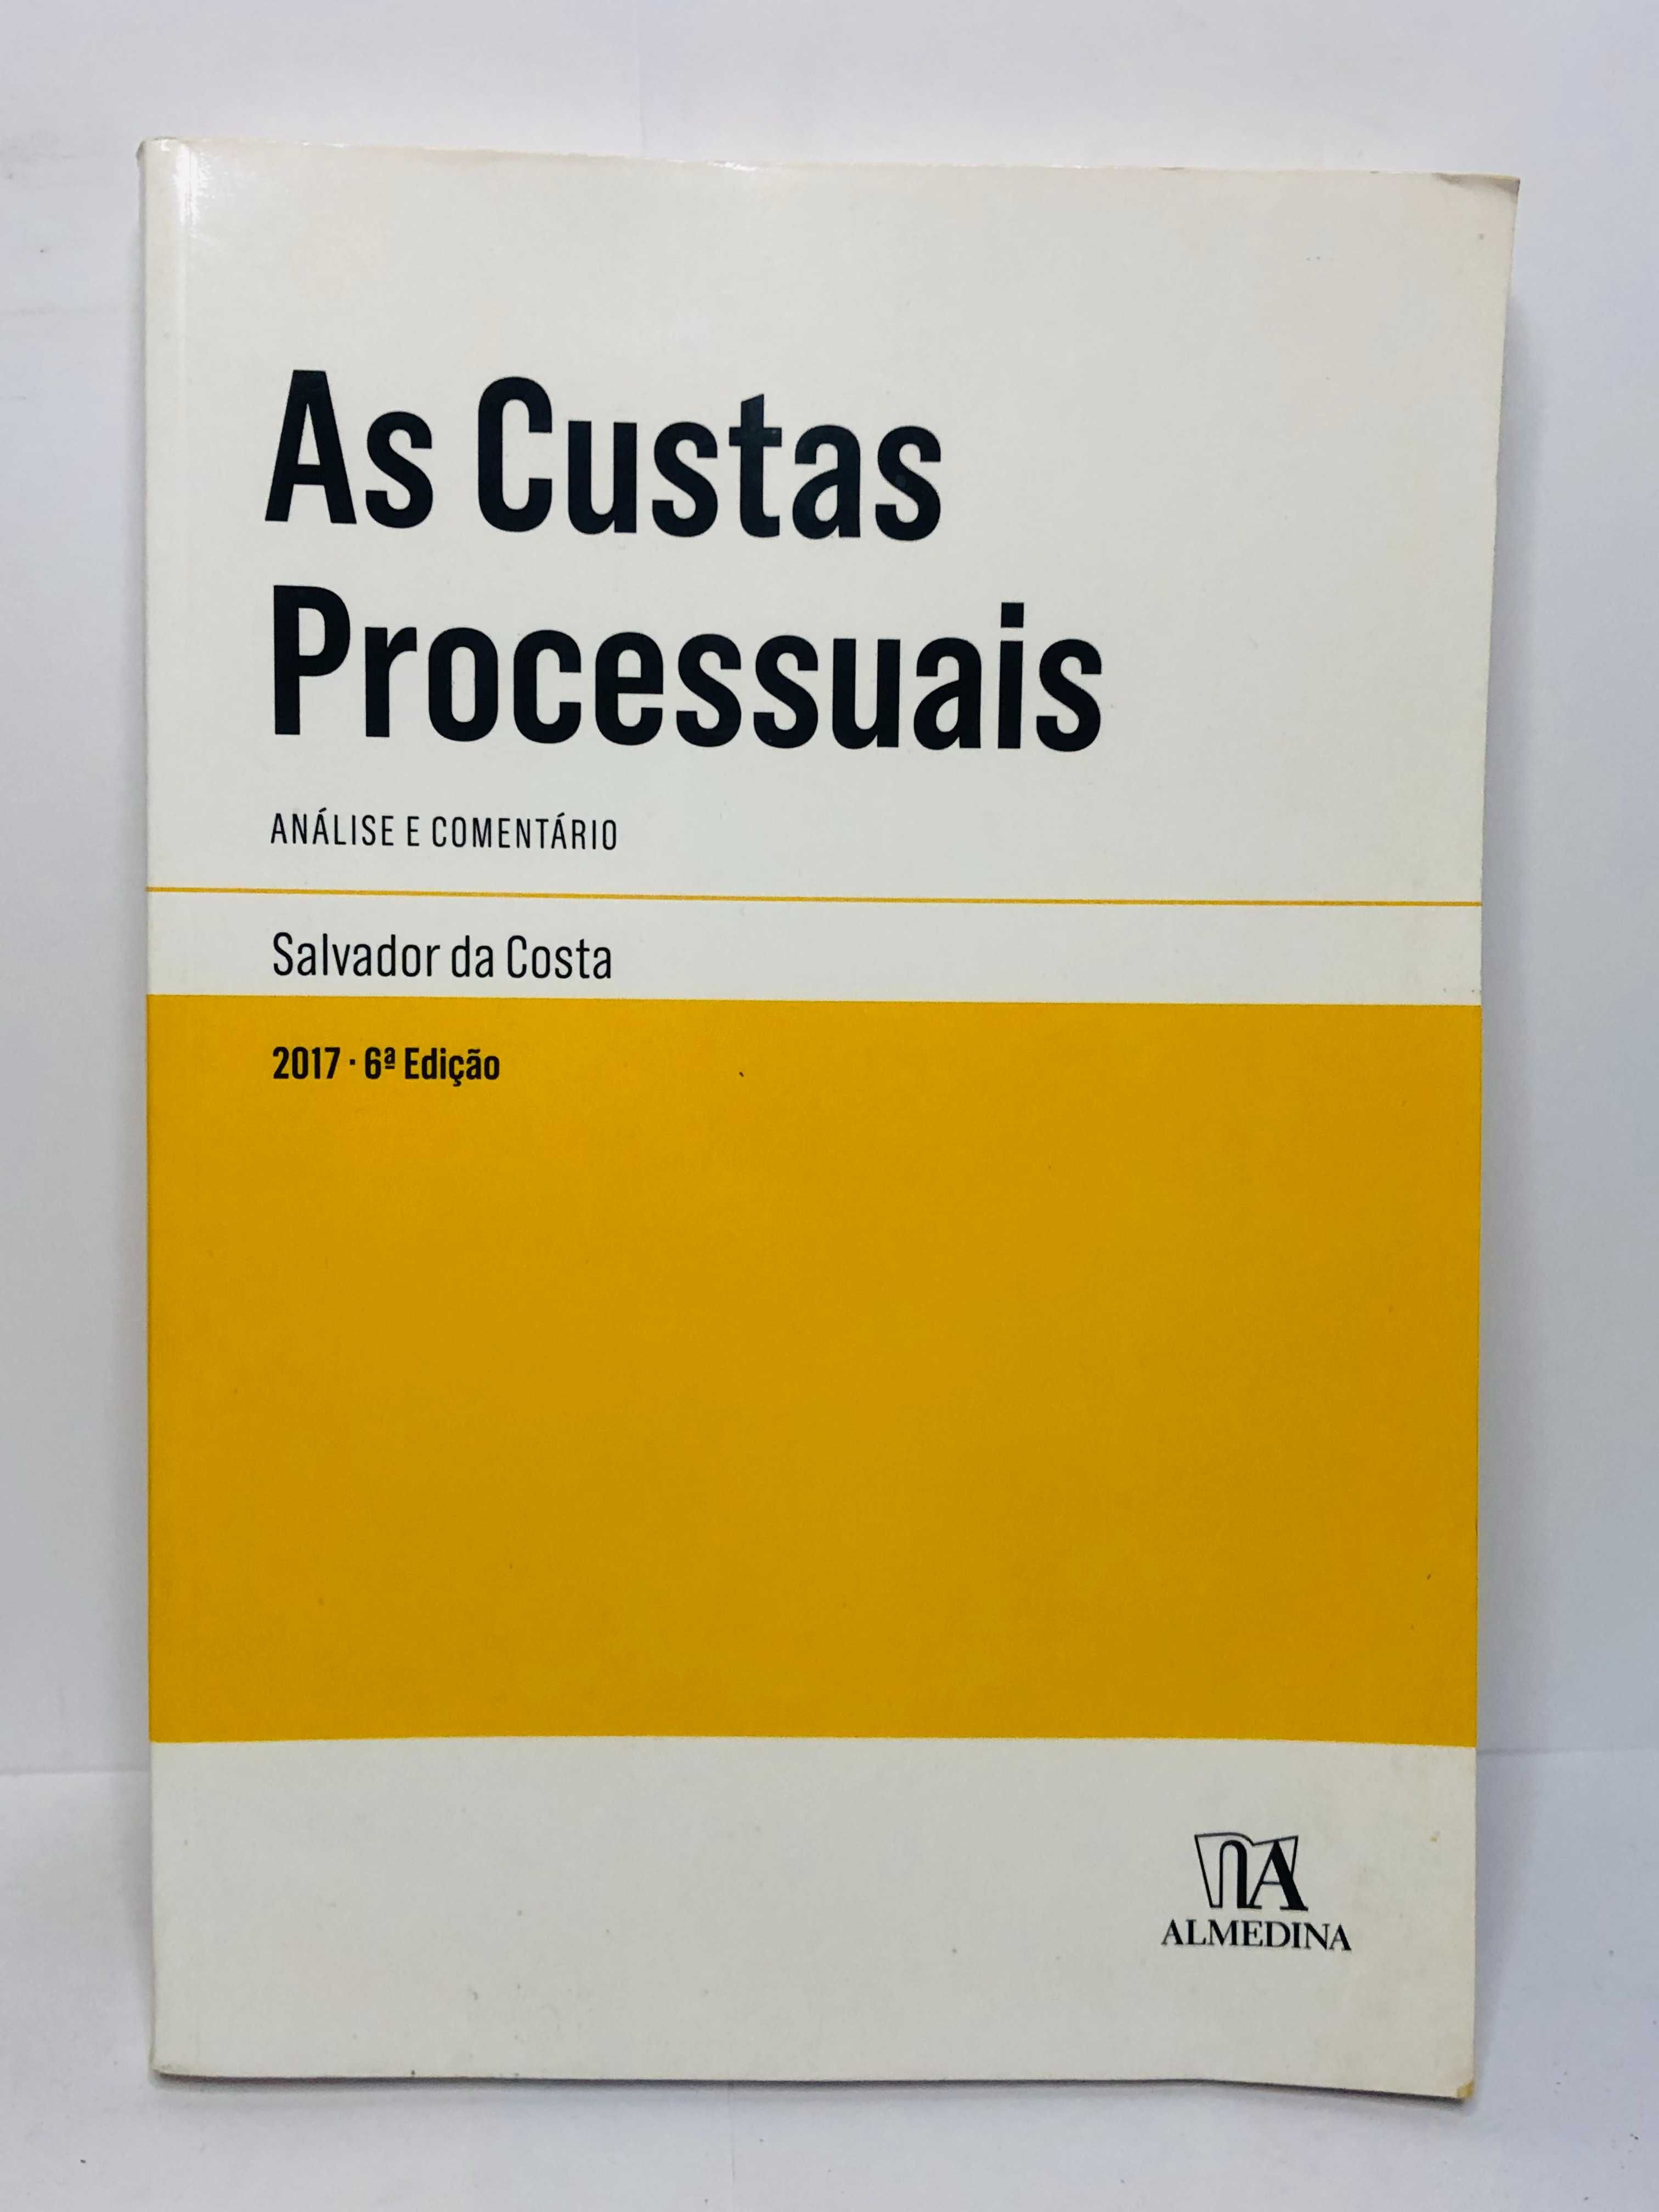 As Custas Processuais (Análise e Comentário) 2017 - Salvador da Costa